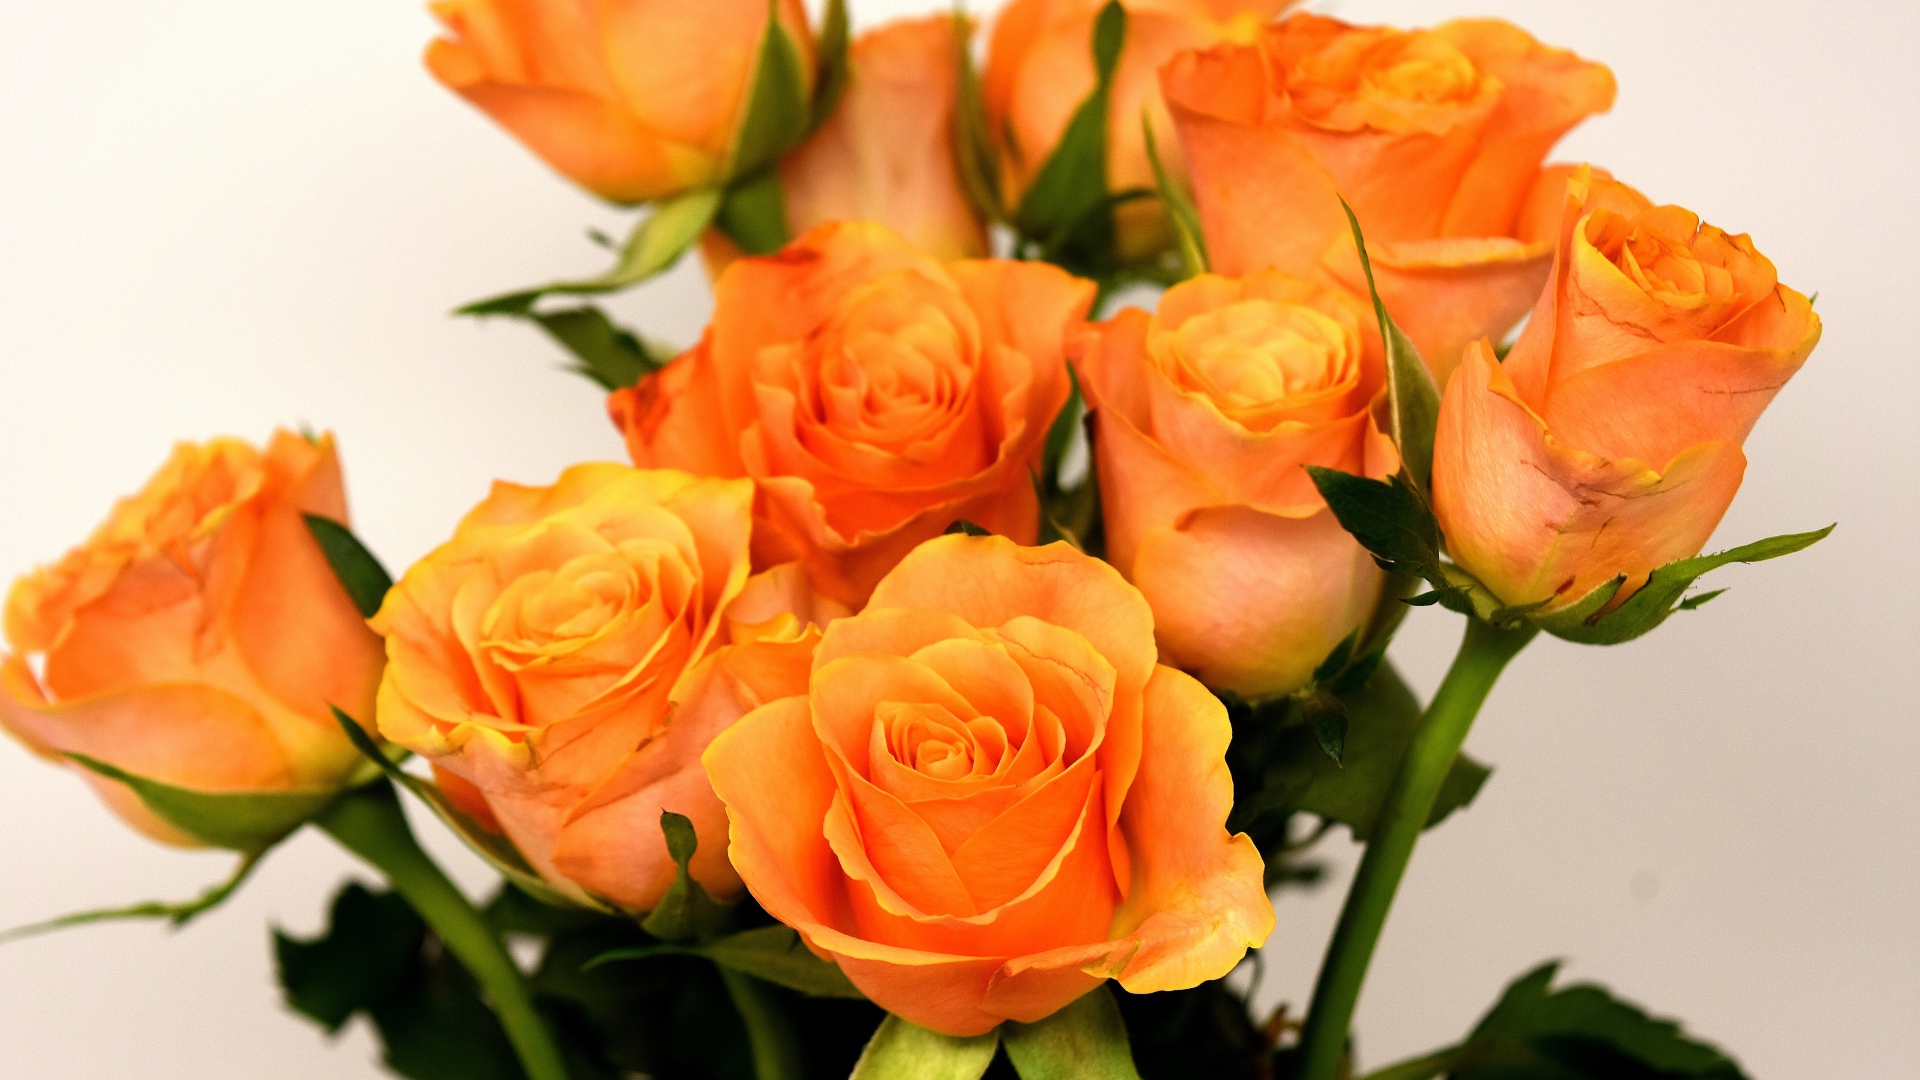 Букет красивых оранжевых роз на сером фоне